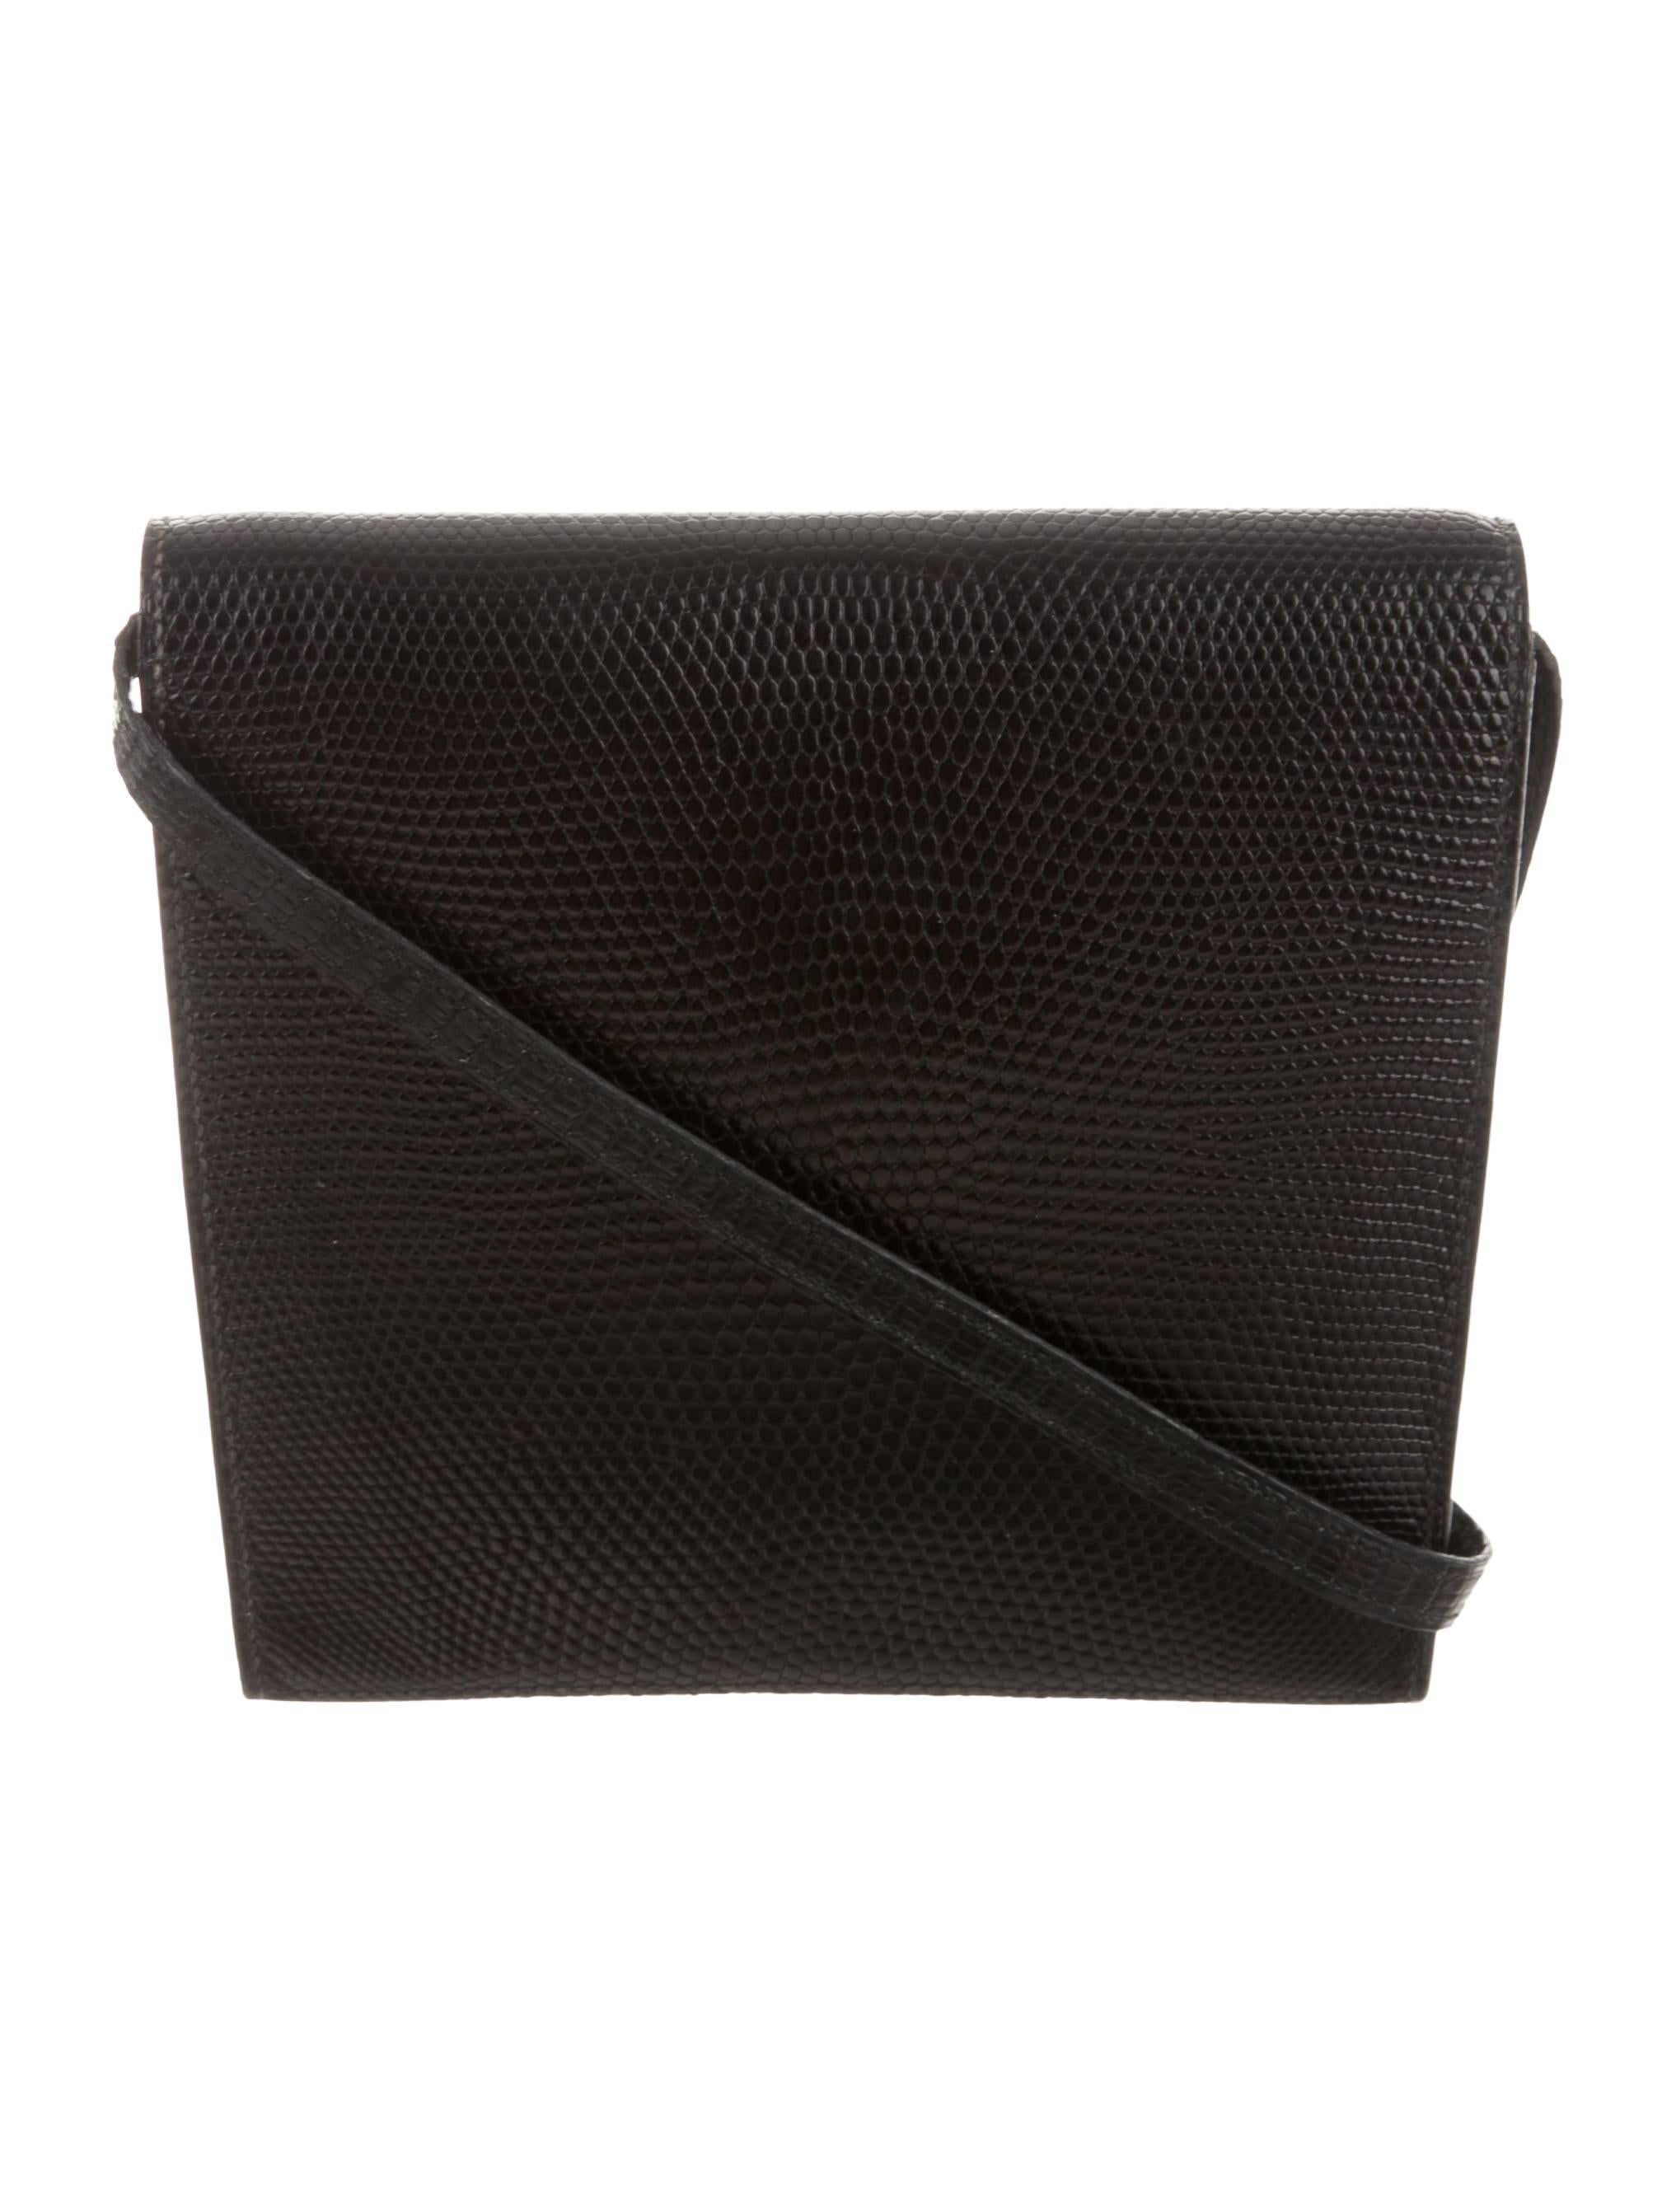 Hermes Black Lizard Leather Kelly Lock Gold Hardware Envelope Shoulder Bag 1